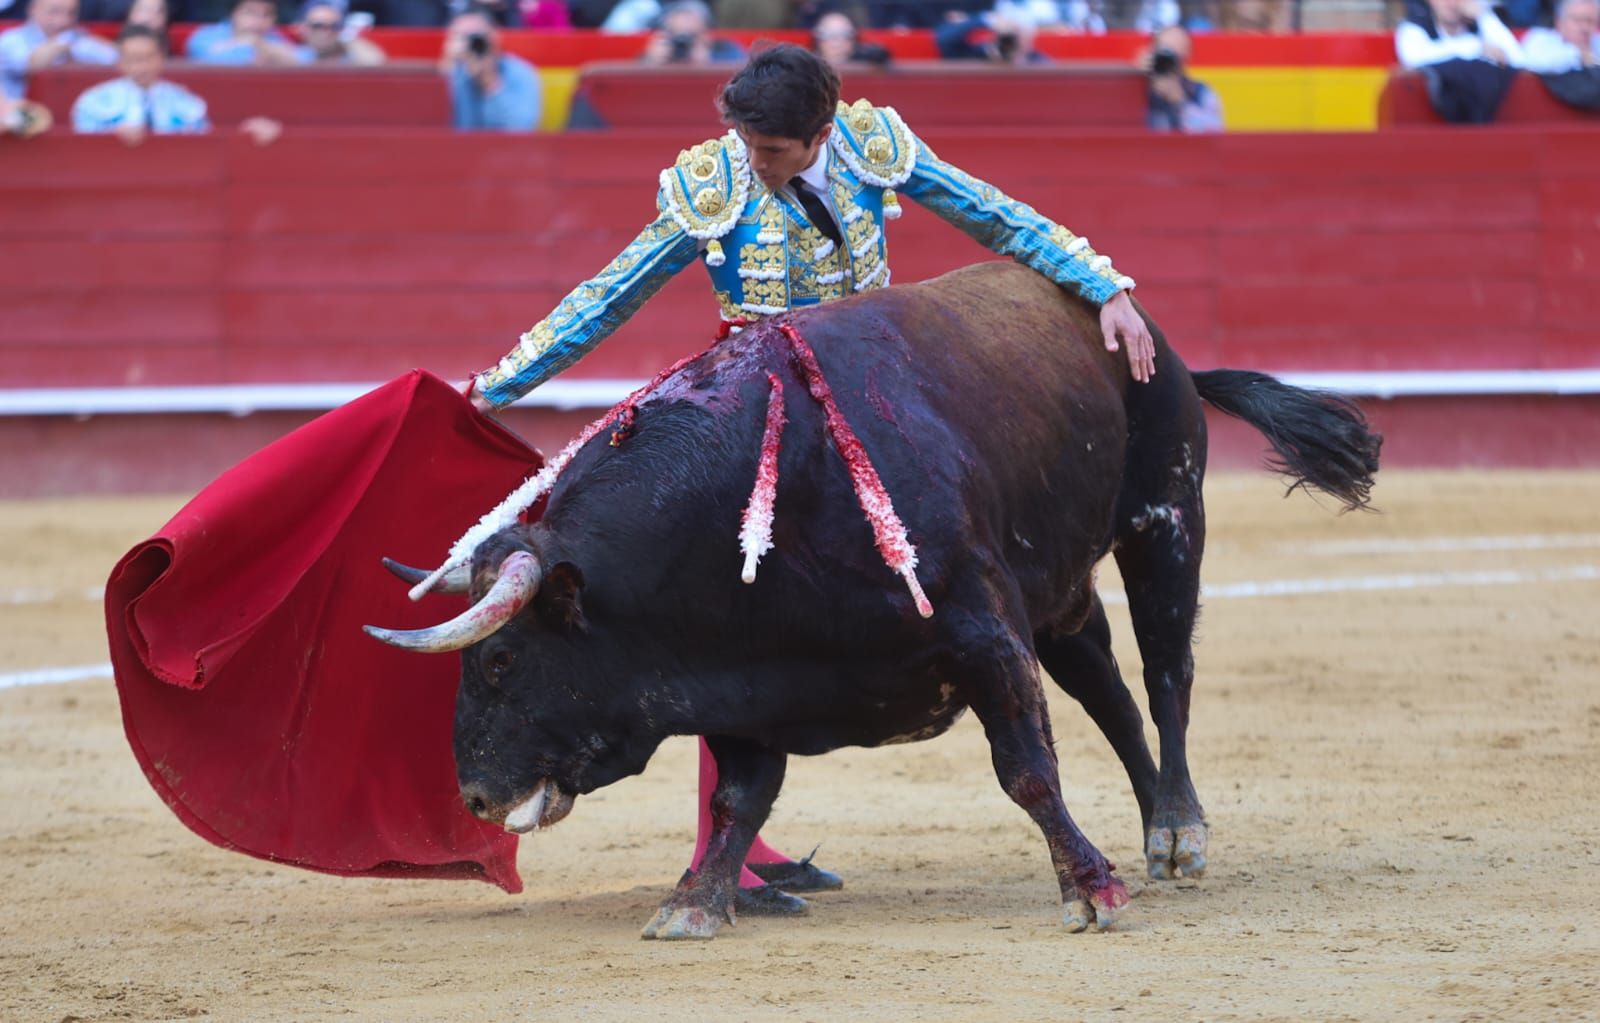 Vicente, Carmen Lomana y Enrique Ponce en la corrida de toros del 16 de marzo en València